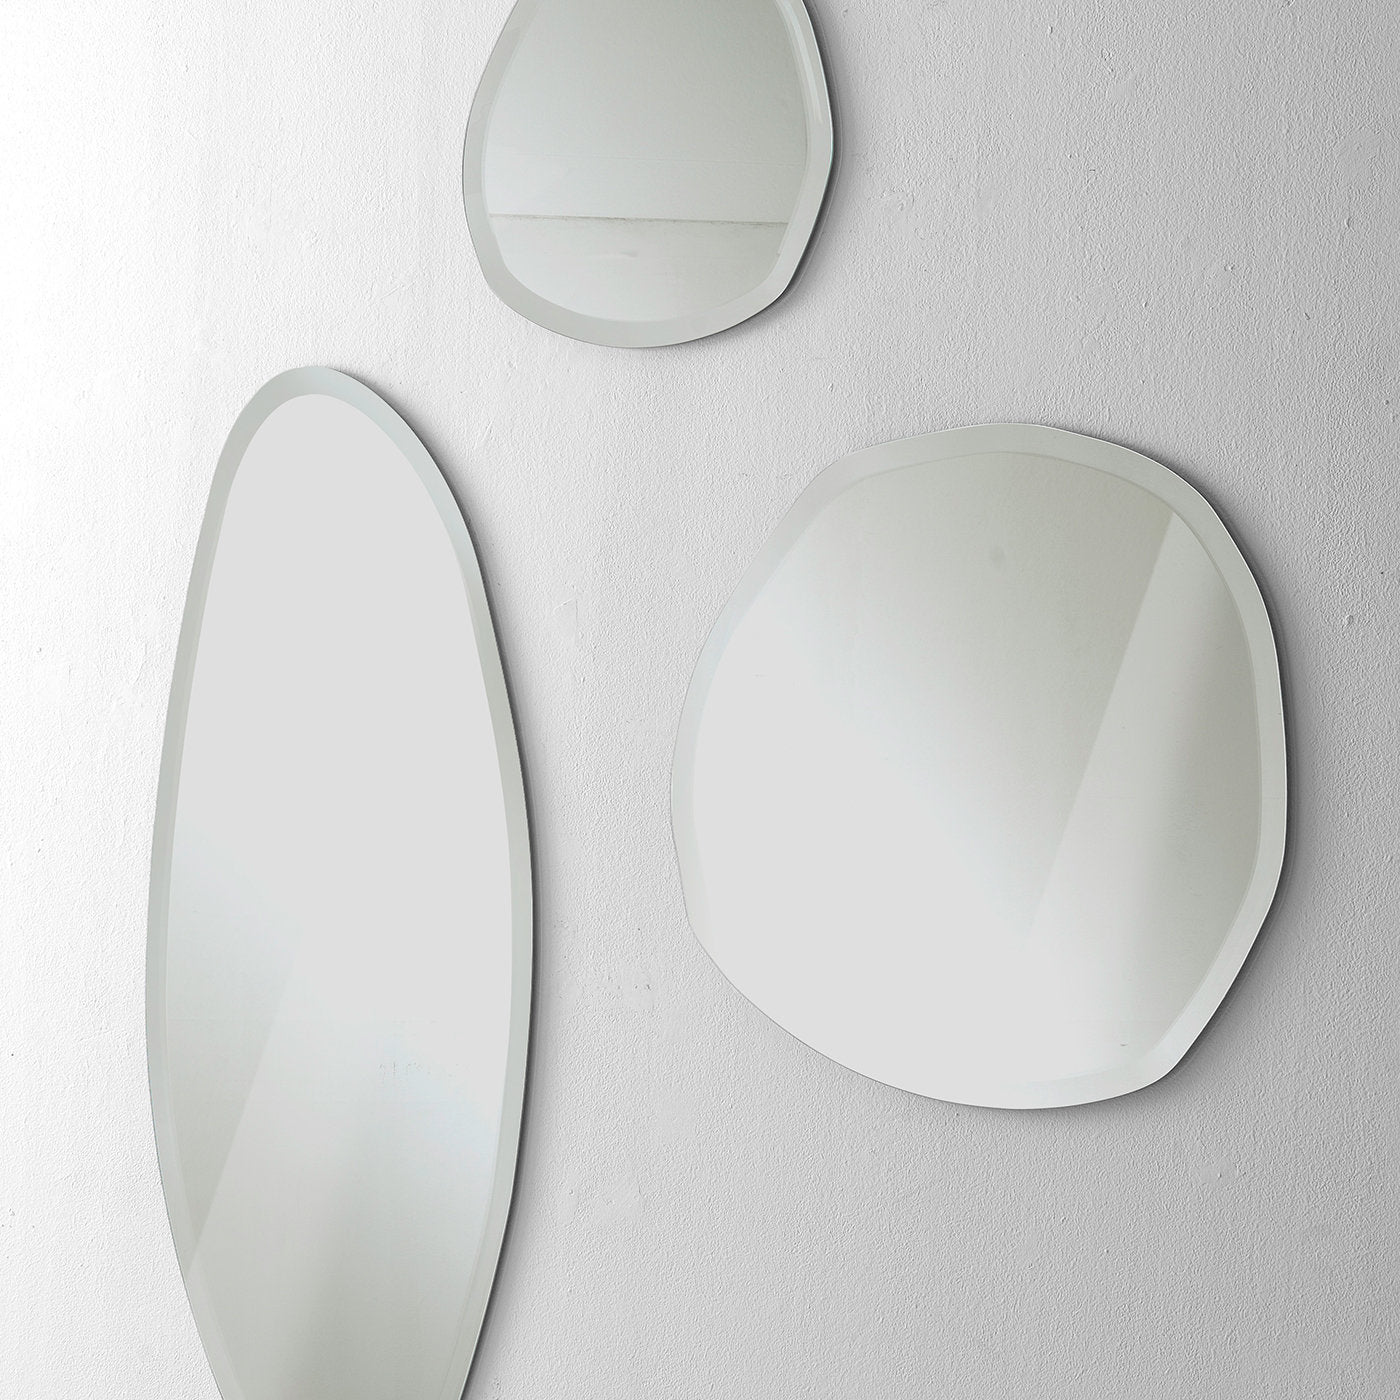 Stone Wall Mirror #1 by Norberto Delfinetti - Alternative view 1